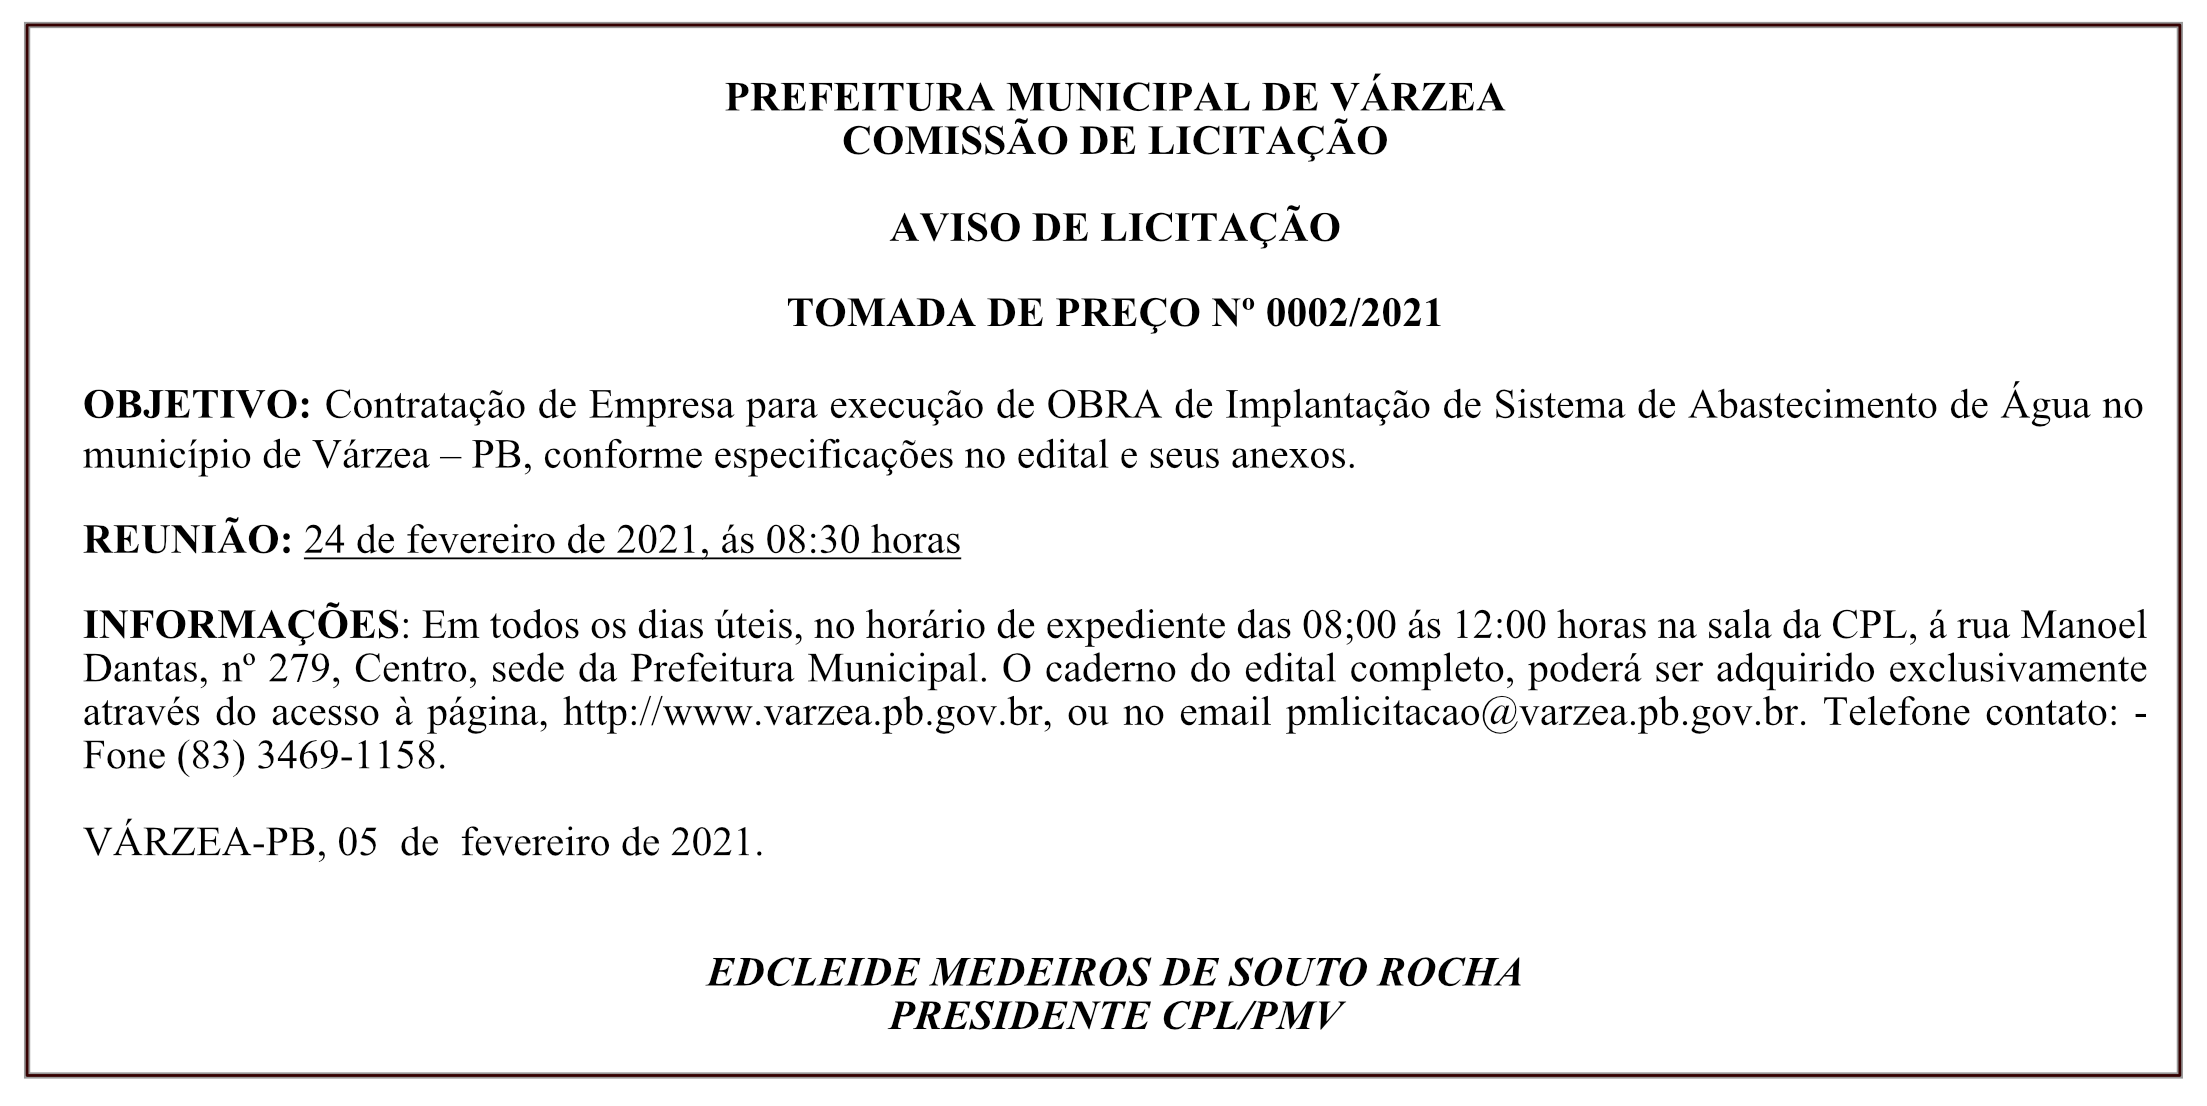 PREFEITURA MUNICIPAL DE VÁRZEA – COMISSÃO DE LICITAÇÃO – AVISO DE LICITAÇÃO – TOMADA DE PREÇO Nº 0002/2021